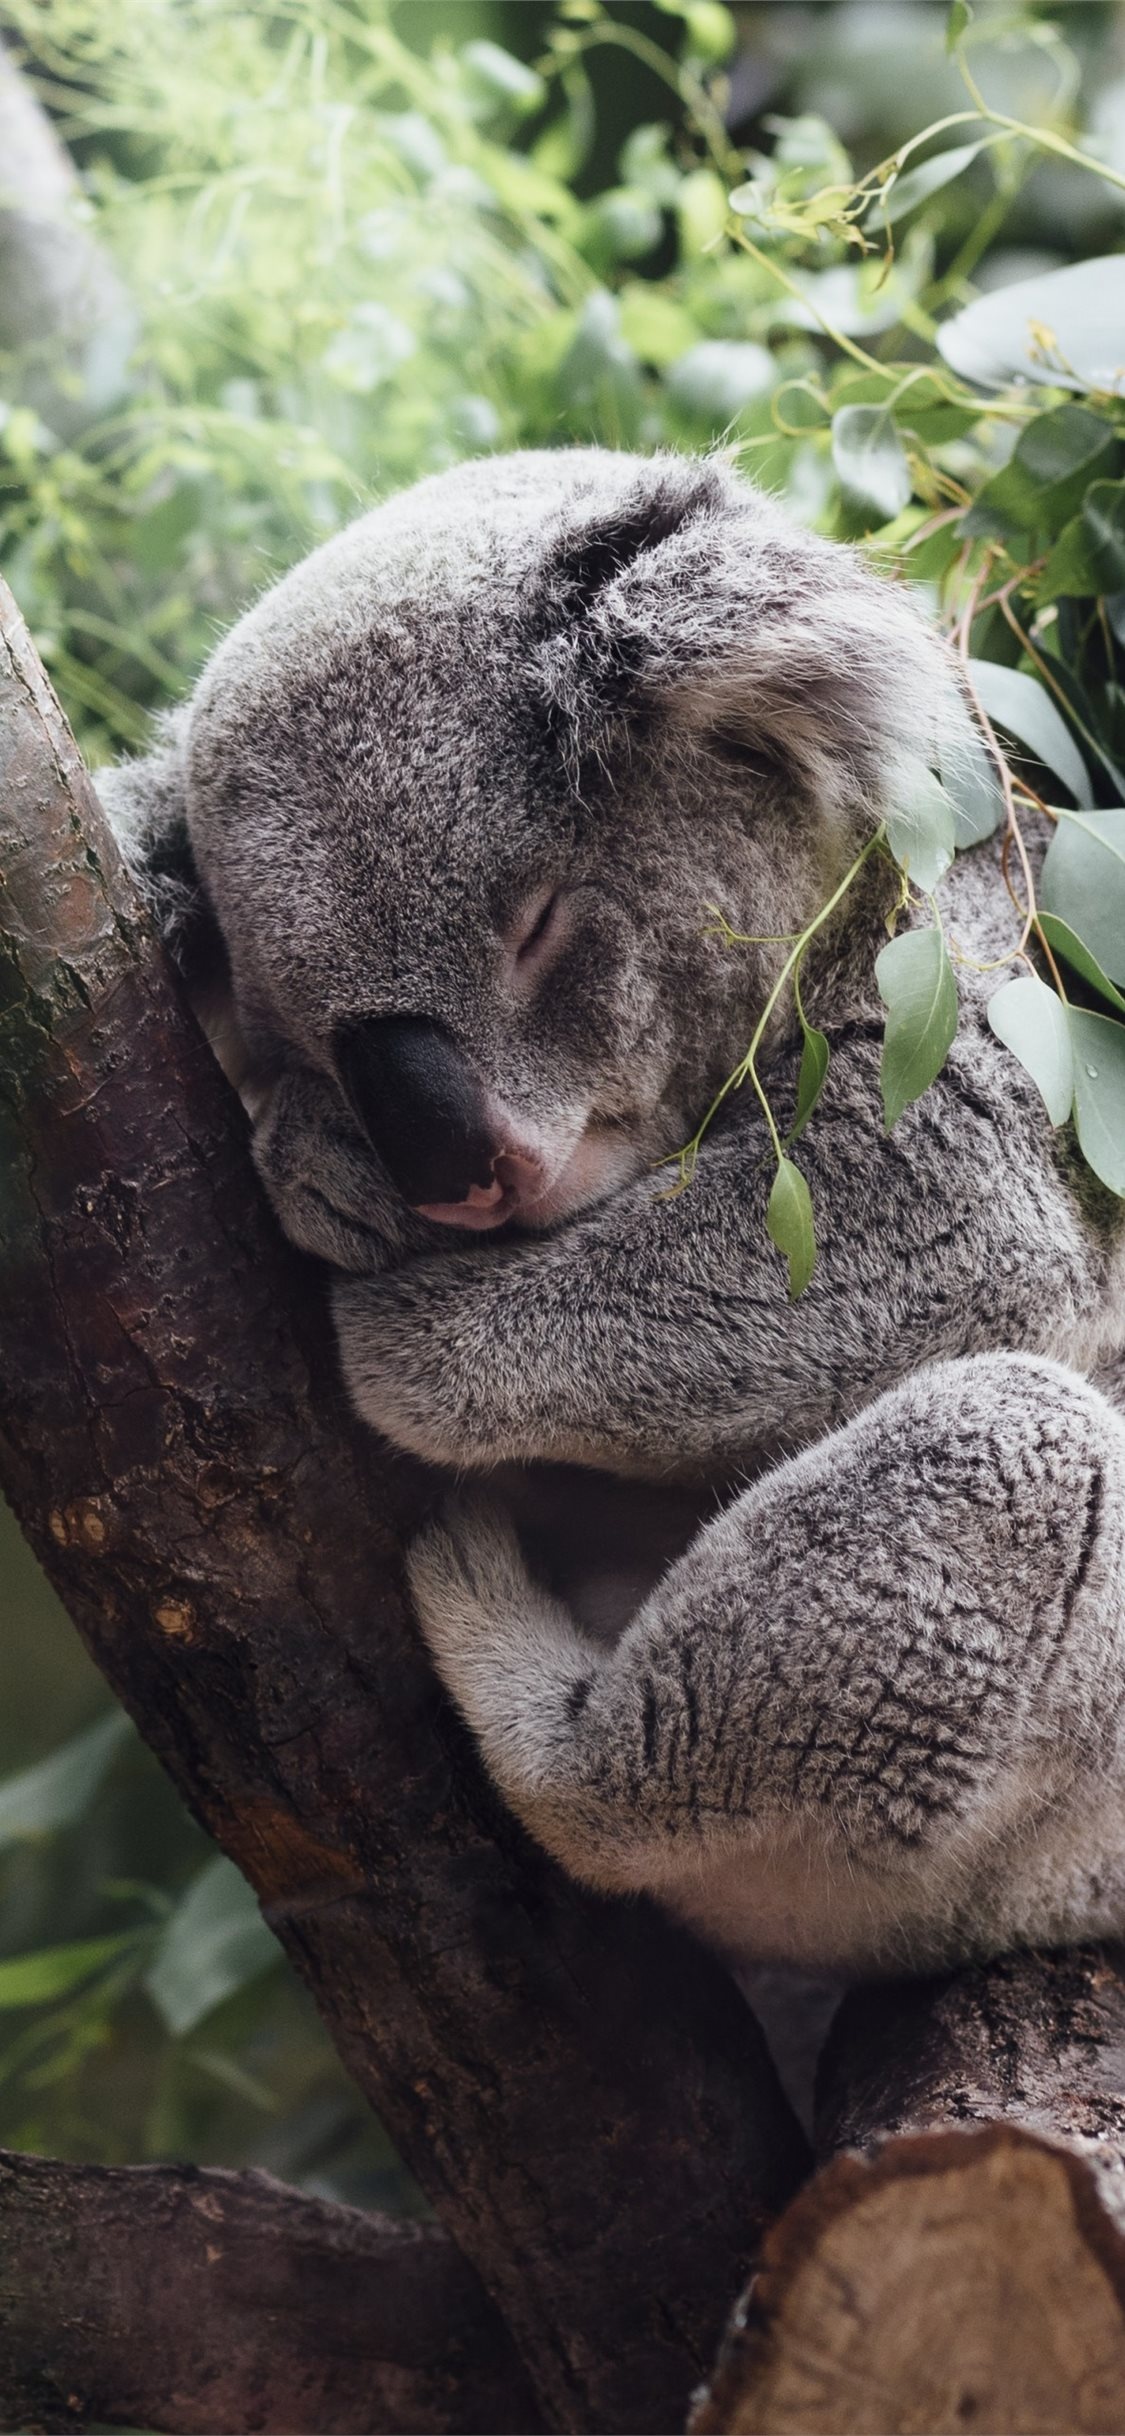 Best HD koala wallpapers, iPhone koala backgrounds, Koala beauty at its finest, Digital masterpieces, 1130x2440 HD Handy